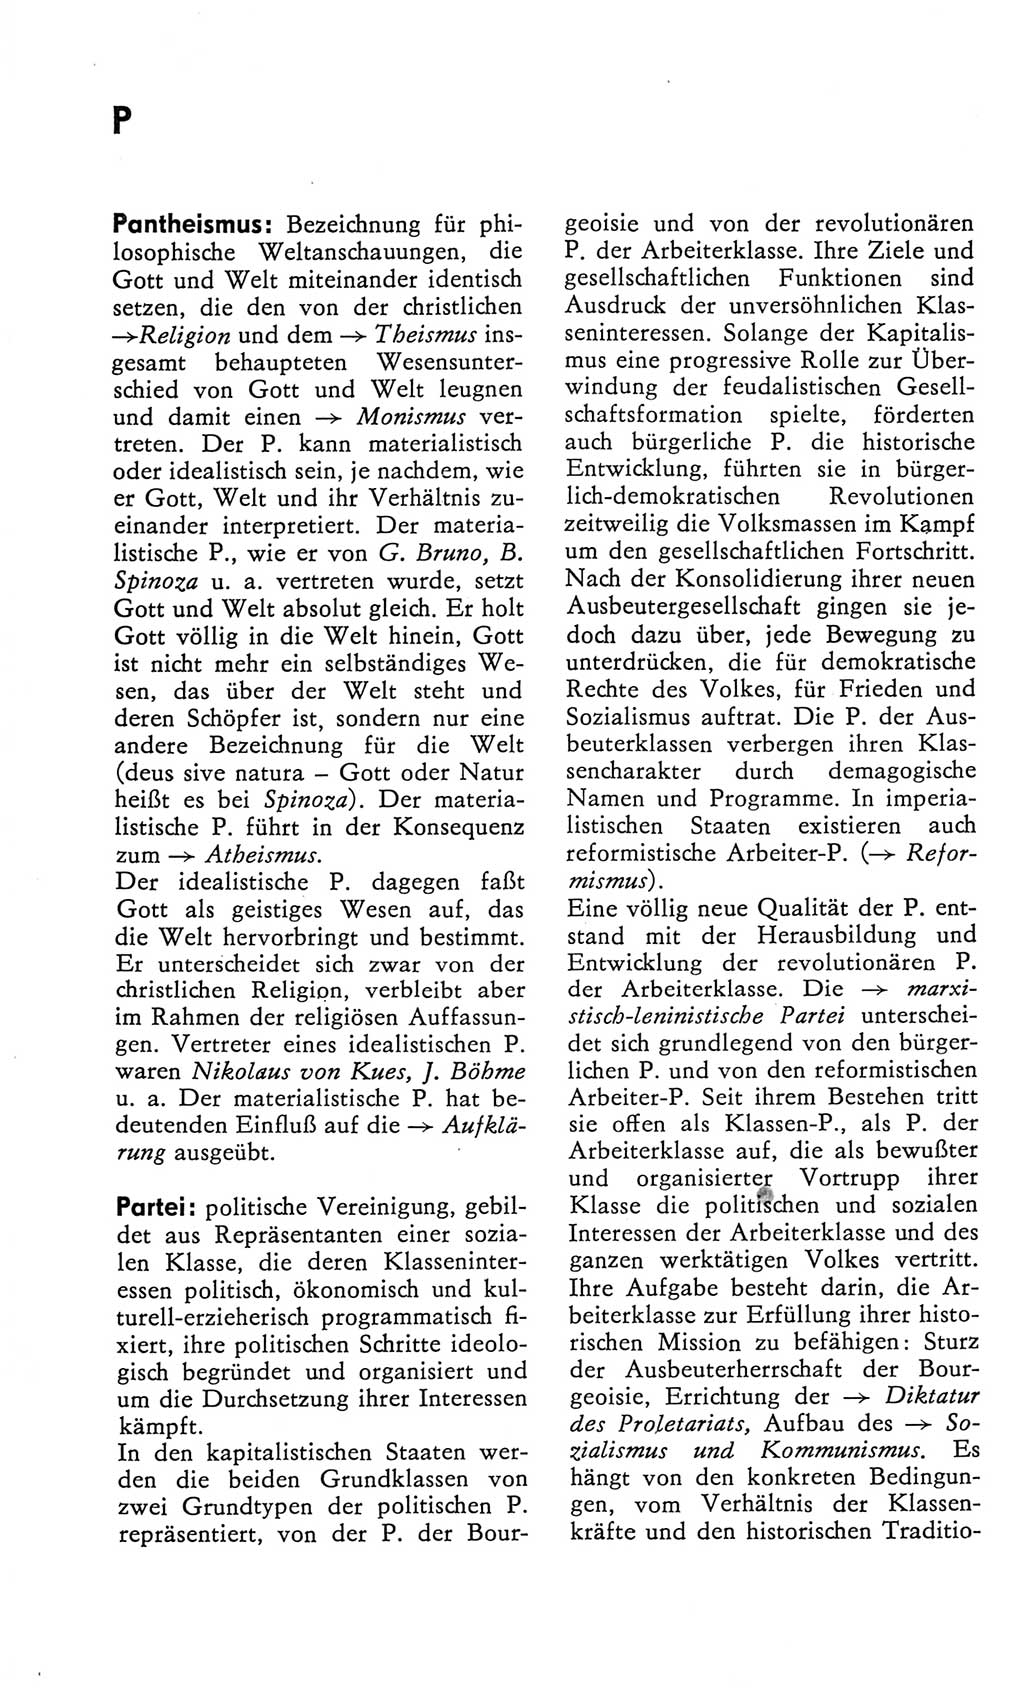 Kleines Wörterbuch der marxistisch-leninistischen Philosophie [Deutsche Demokratische Republik (DDR)] 1982, Seite 244 (Kl. Wb. ML Phil. DDR 1982, S. 244)